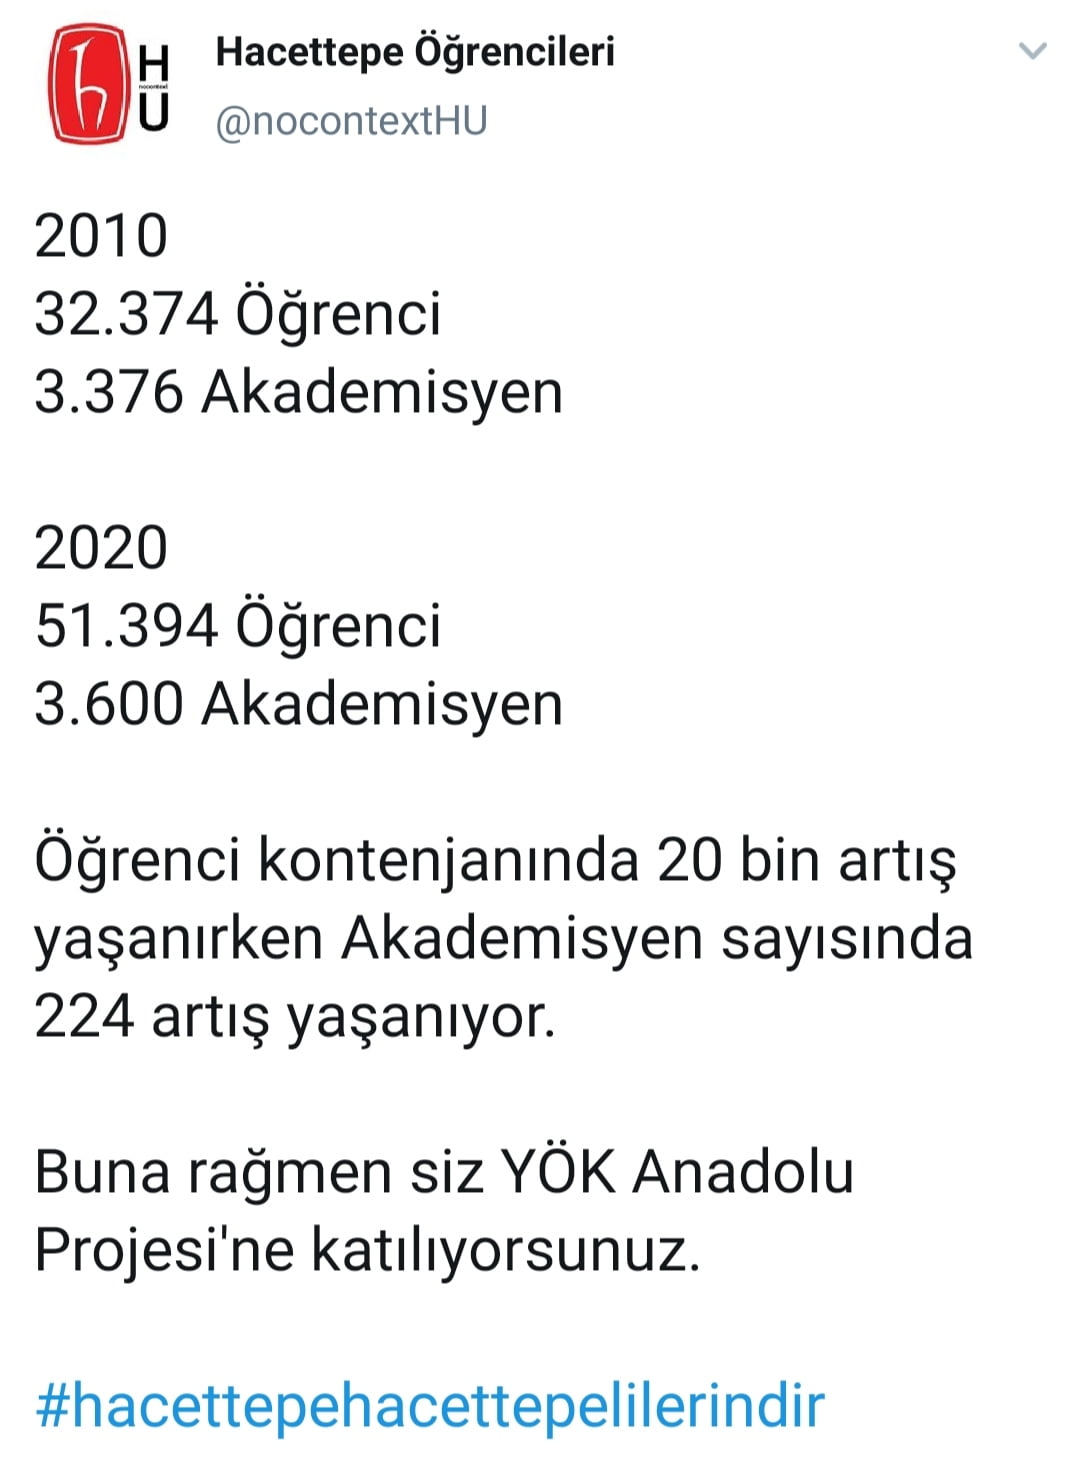 YÖK'ün Anadolu Projesi'ne tepki 5